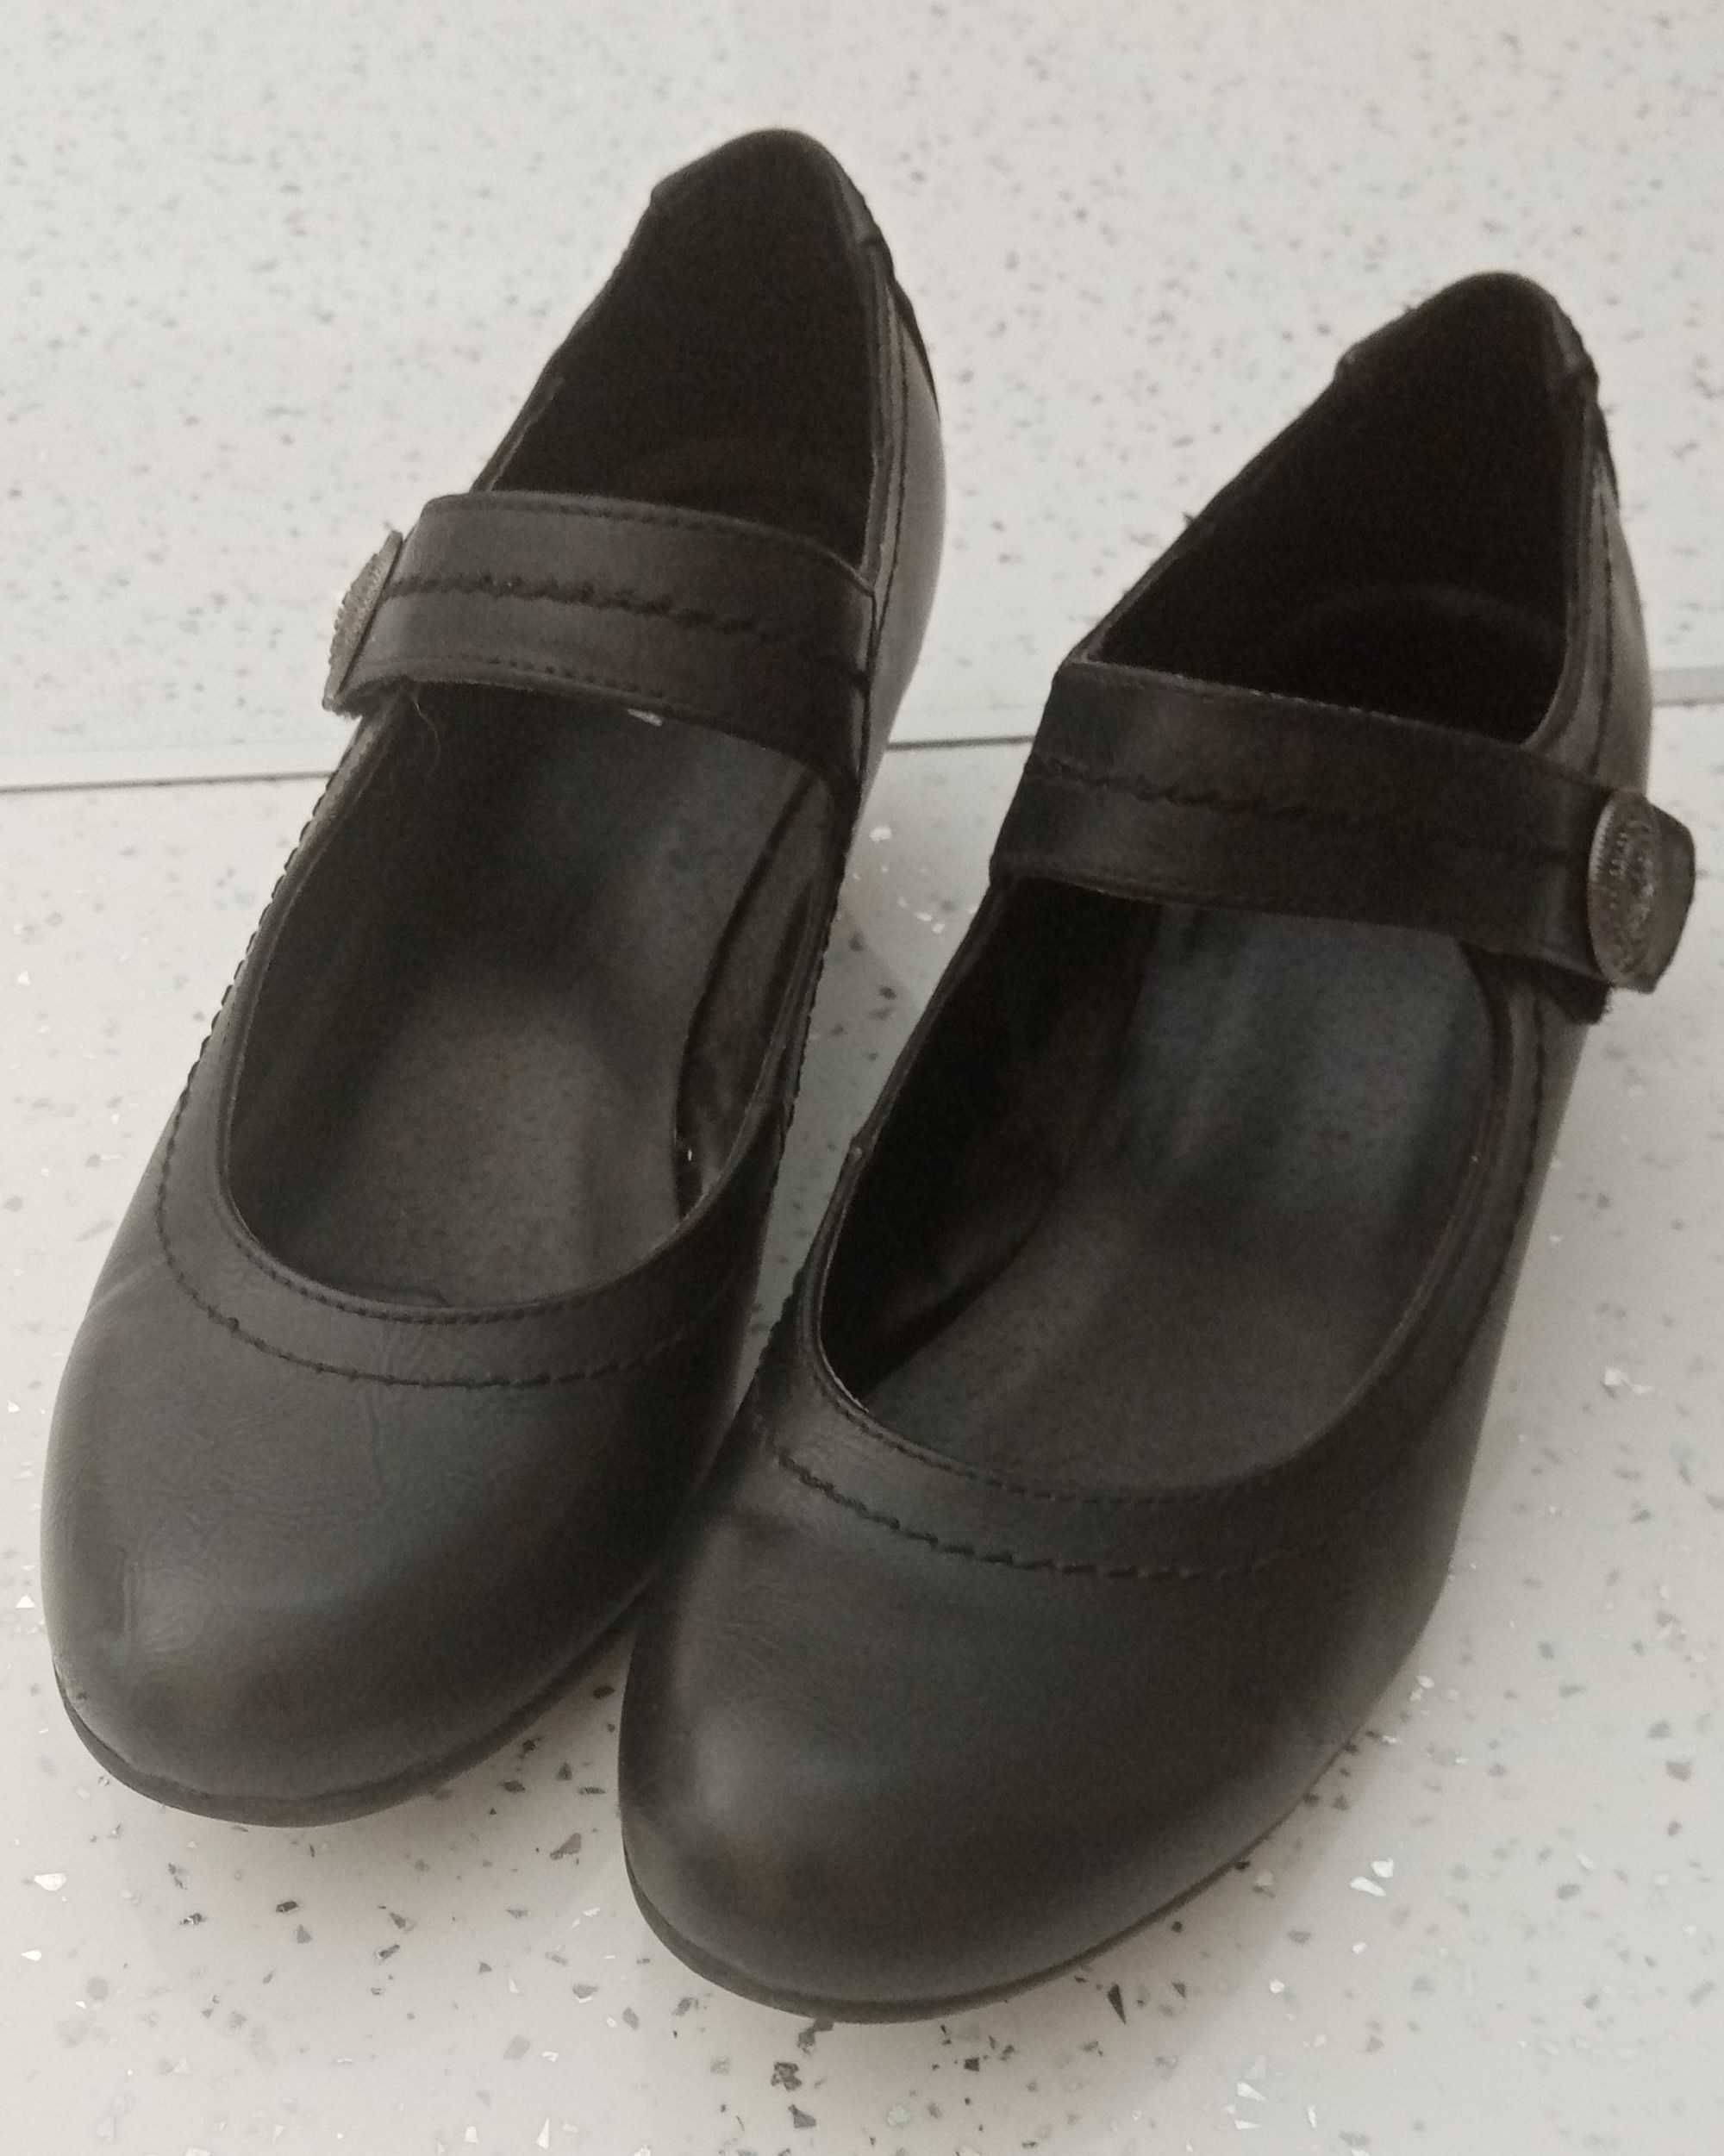 Sapatos pretos, salto 4 cm, tamanho 38